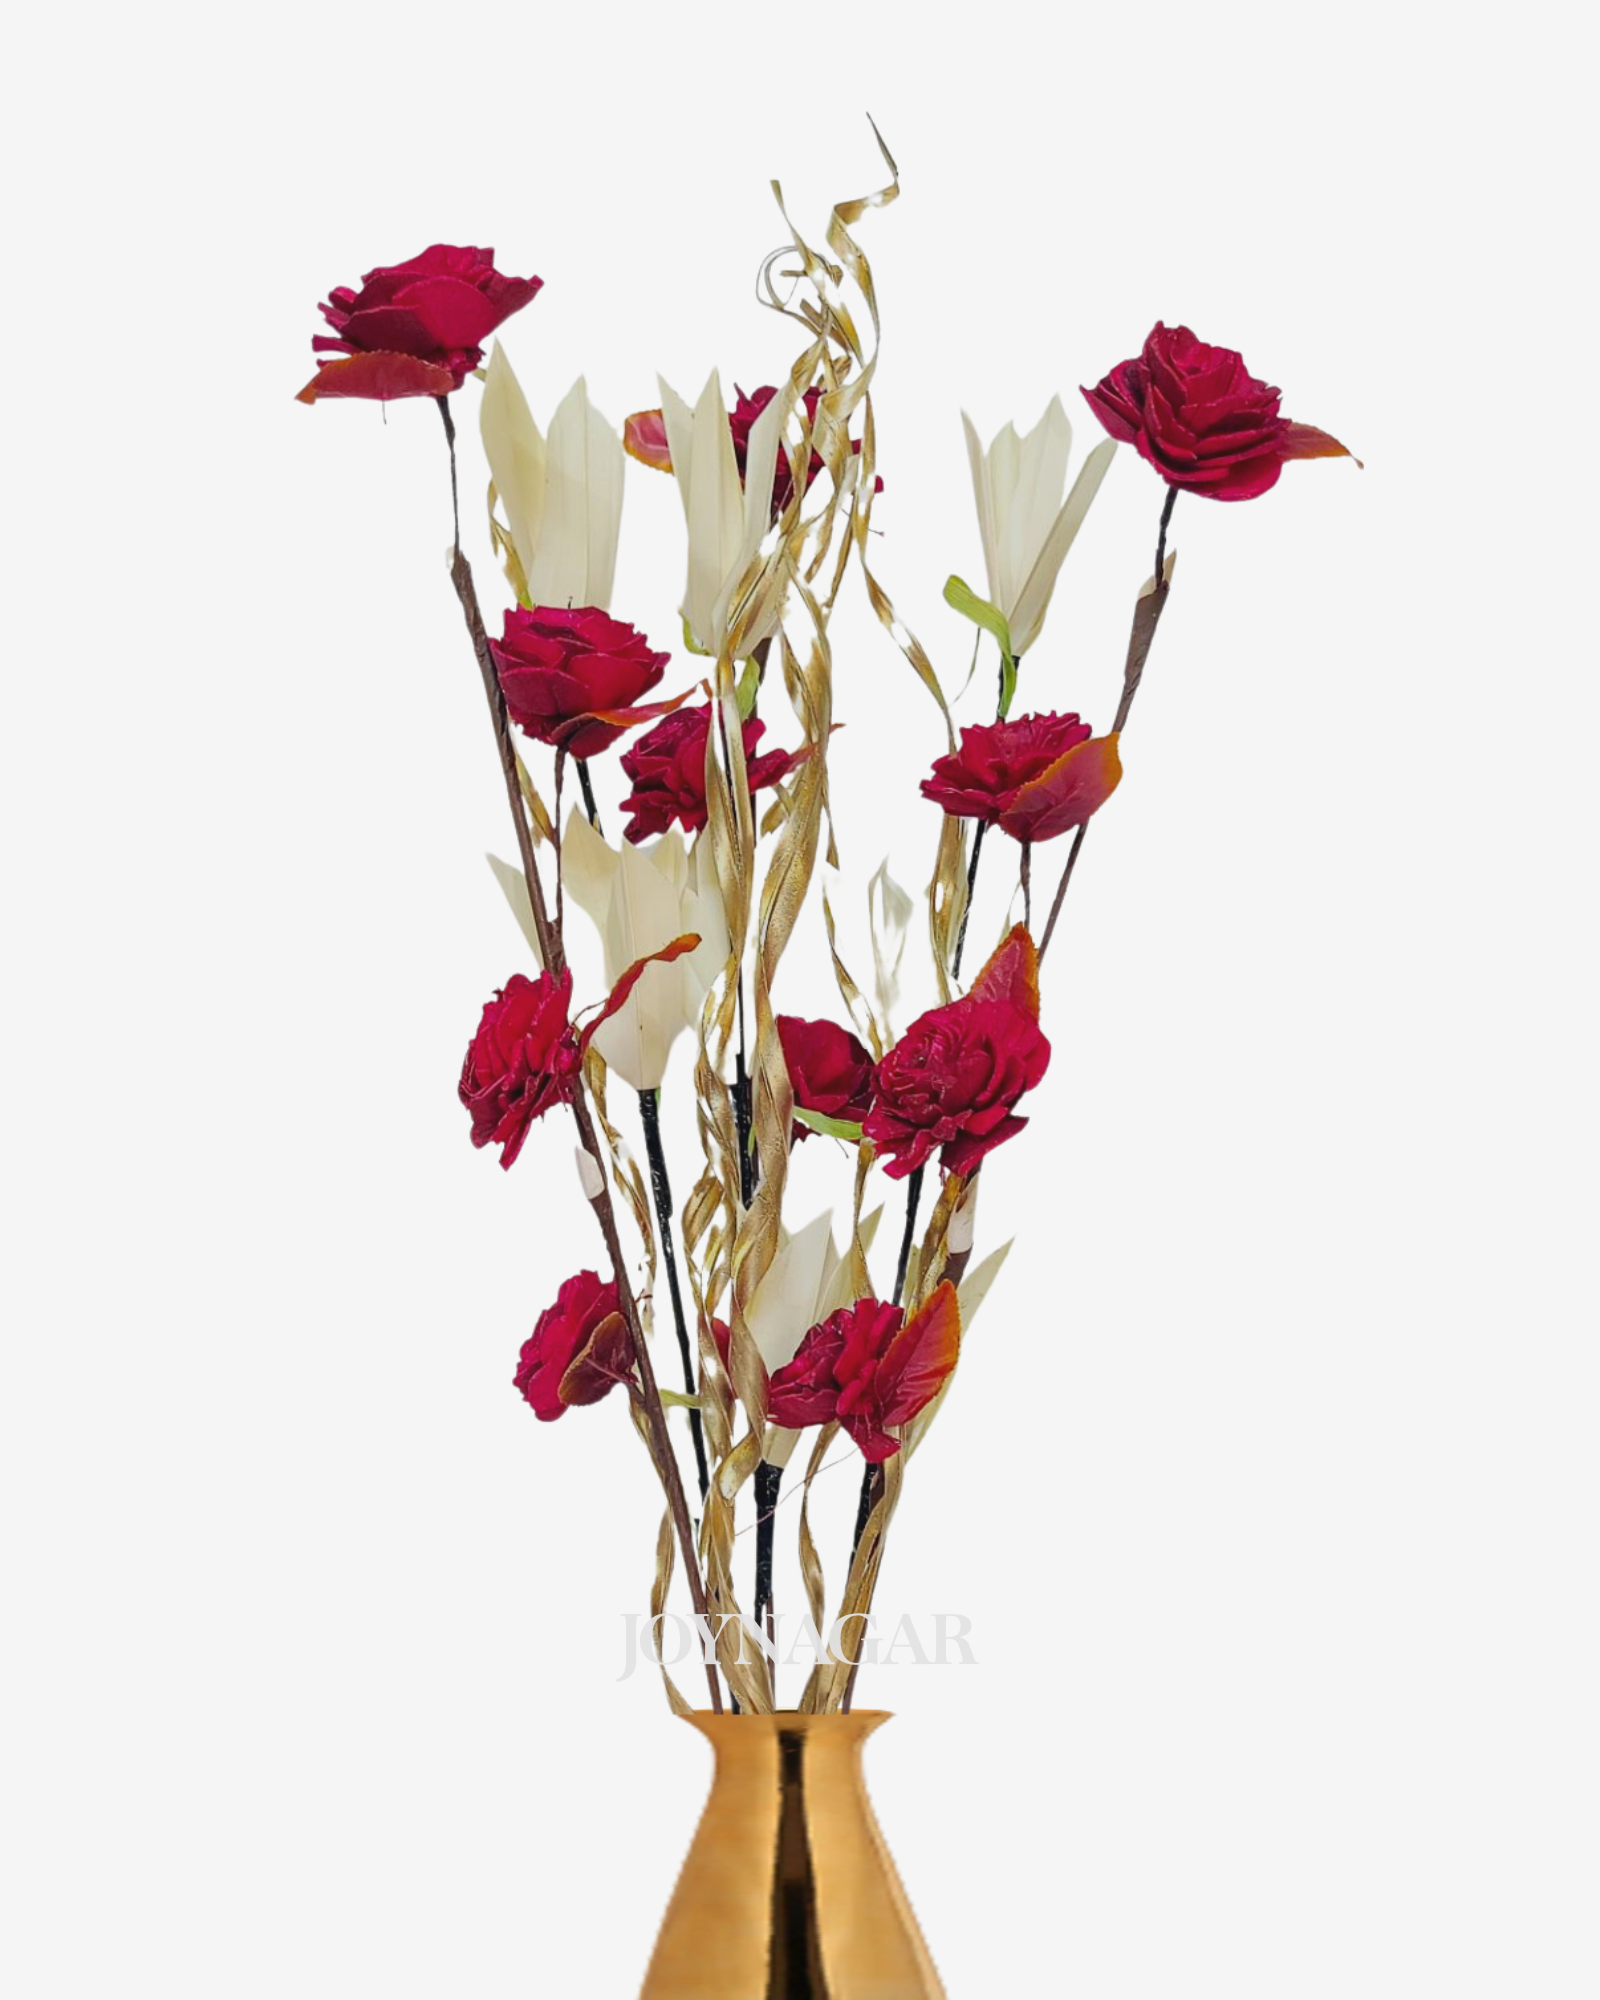 Sola Jumboo Lily Beauty Mix Flower Bunch Joynagar Handicraft Artificial Flowers color_random